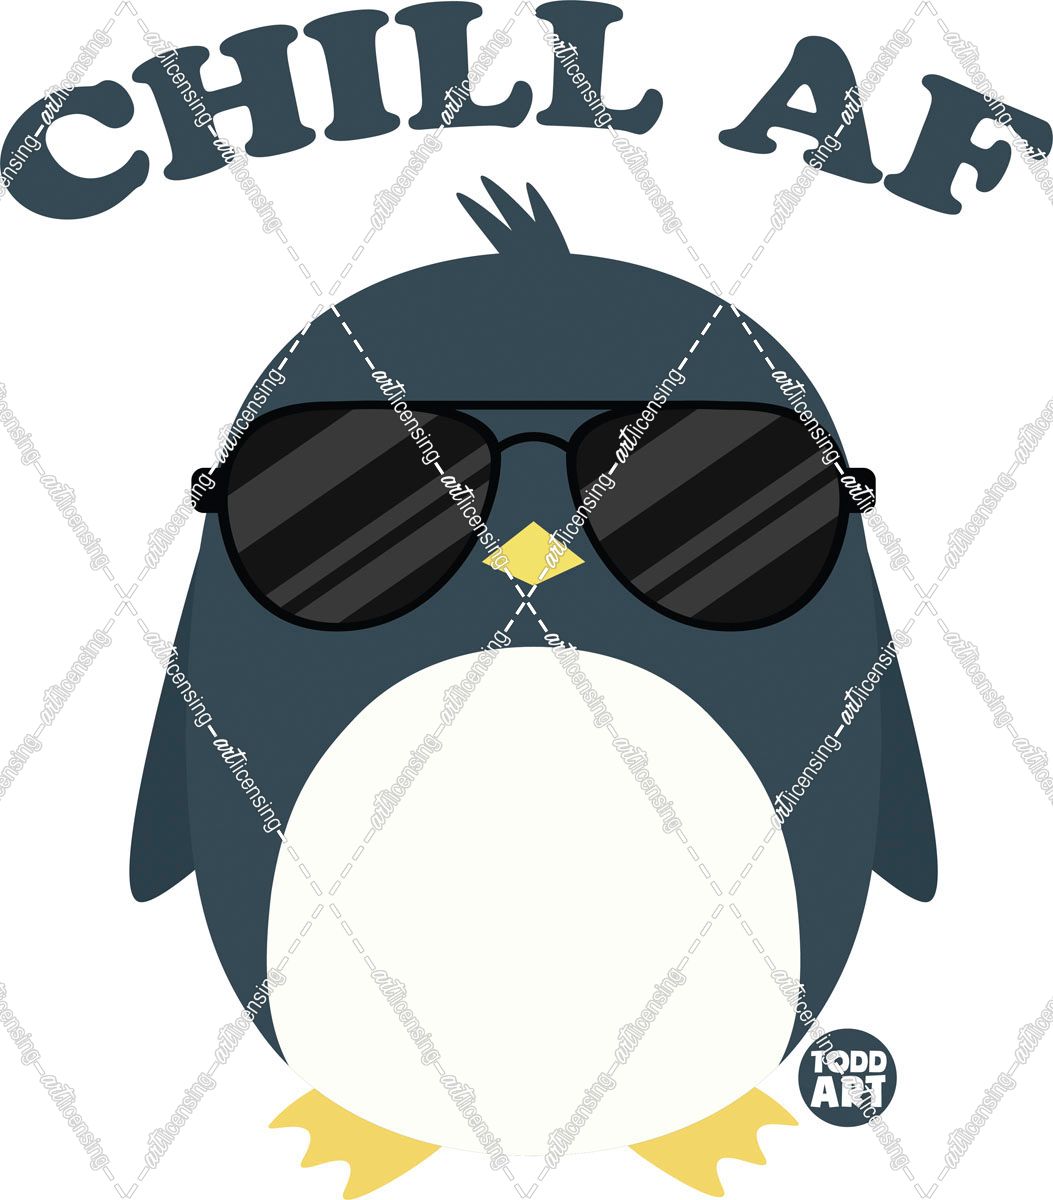 Chill AF Penguin